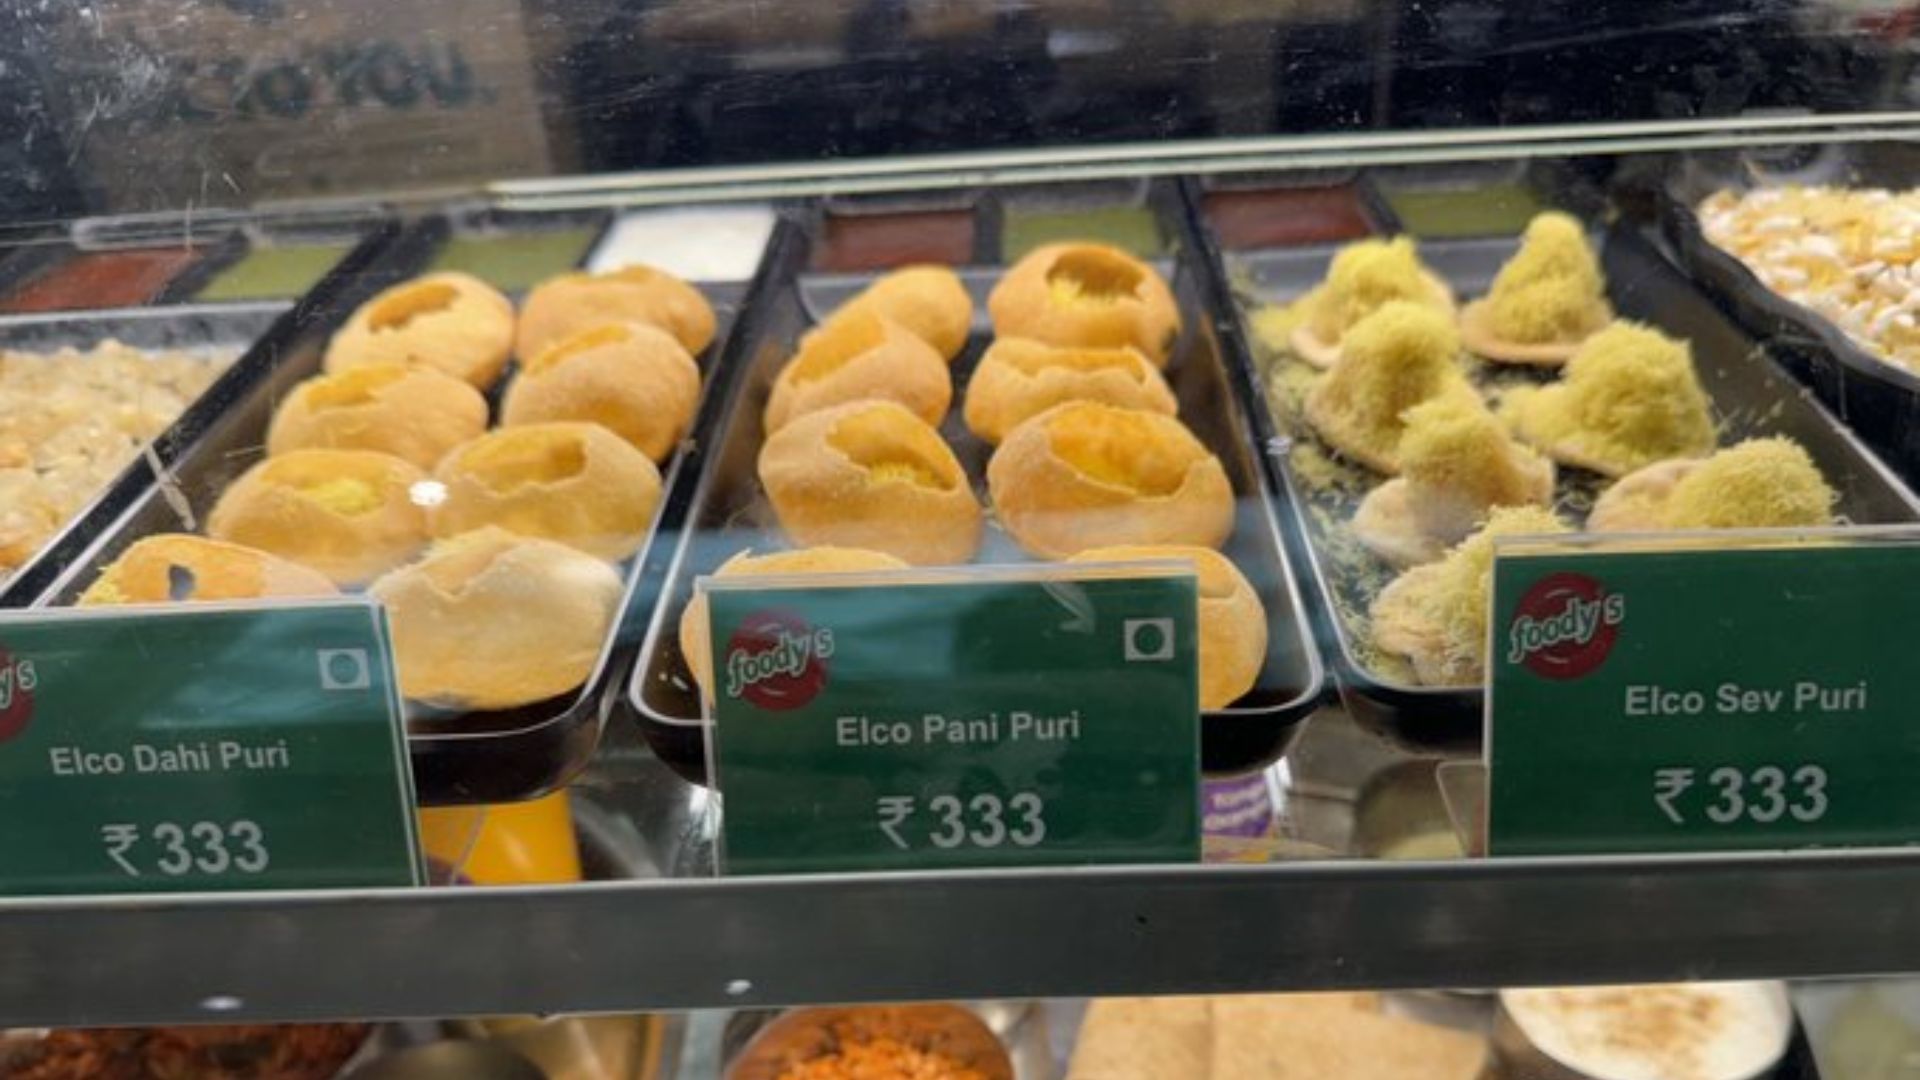 Pani Puri Being Sold For ₹333 at Mumbai Airport